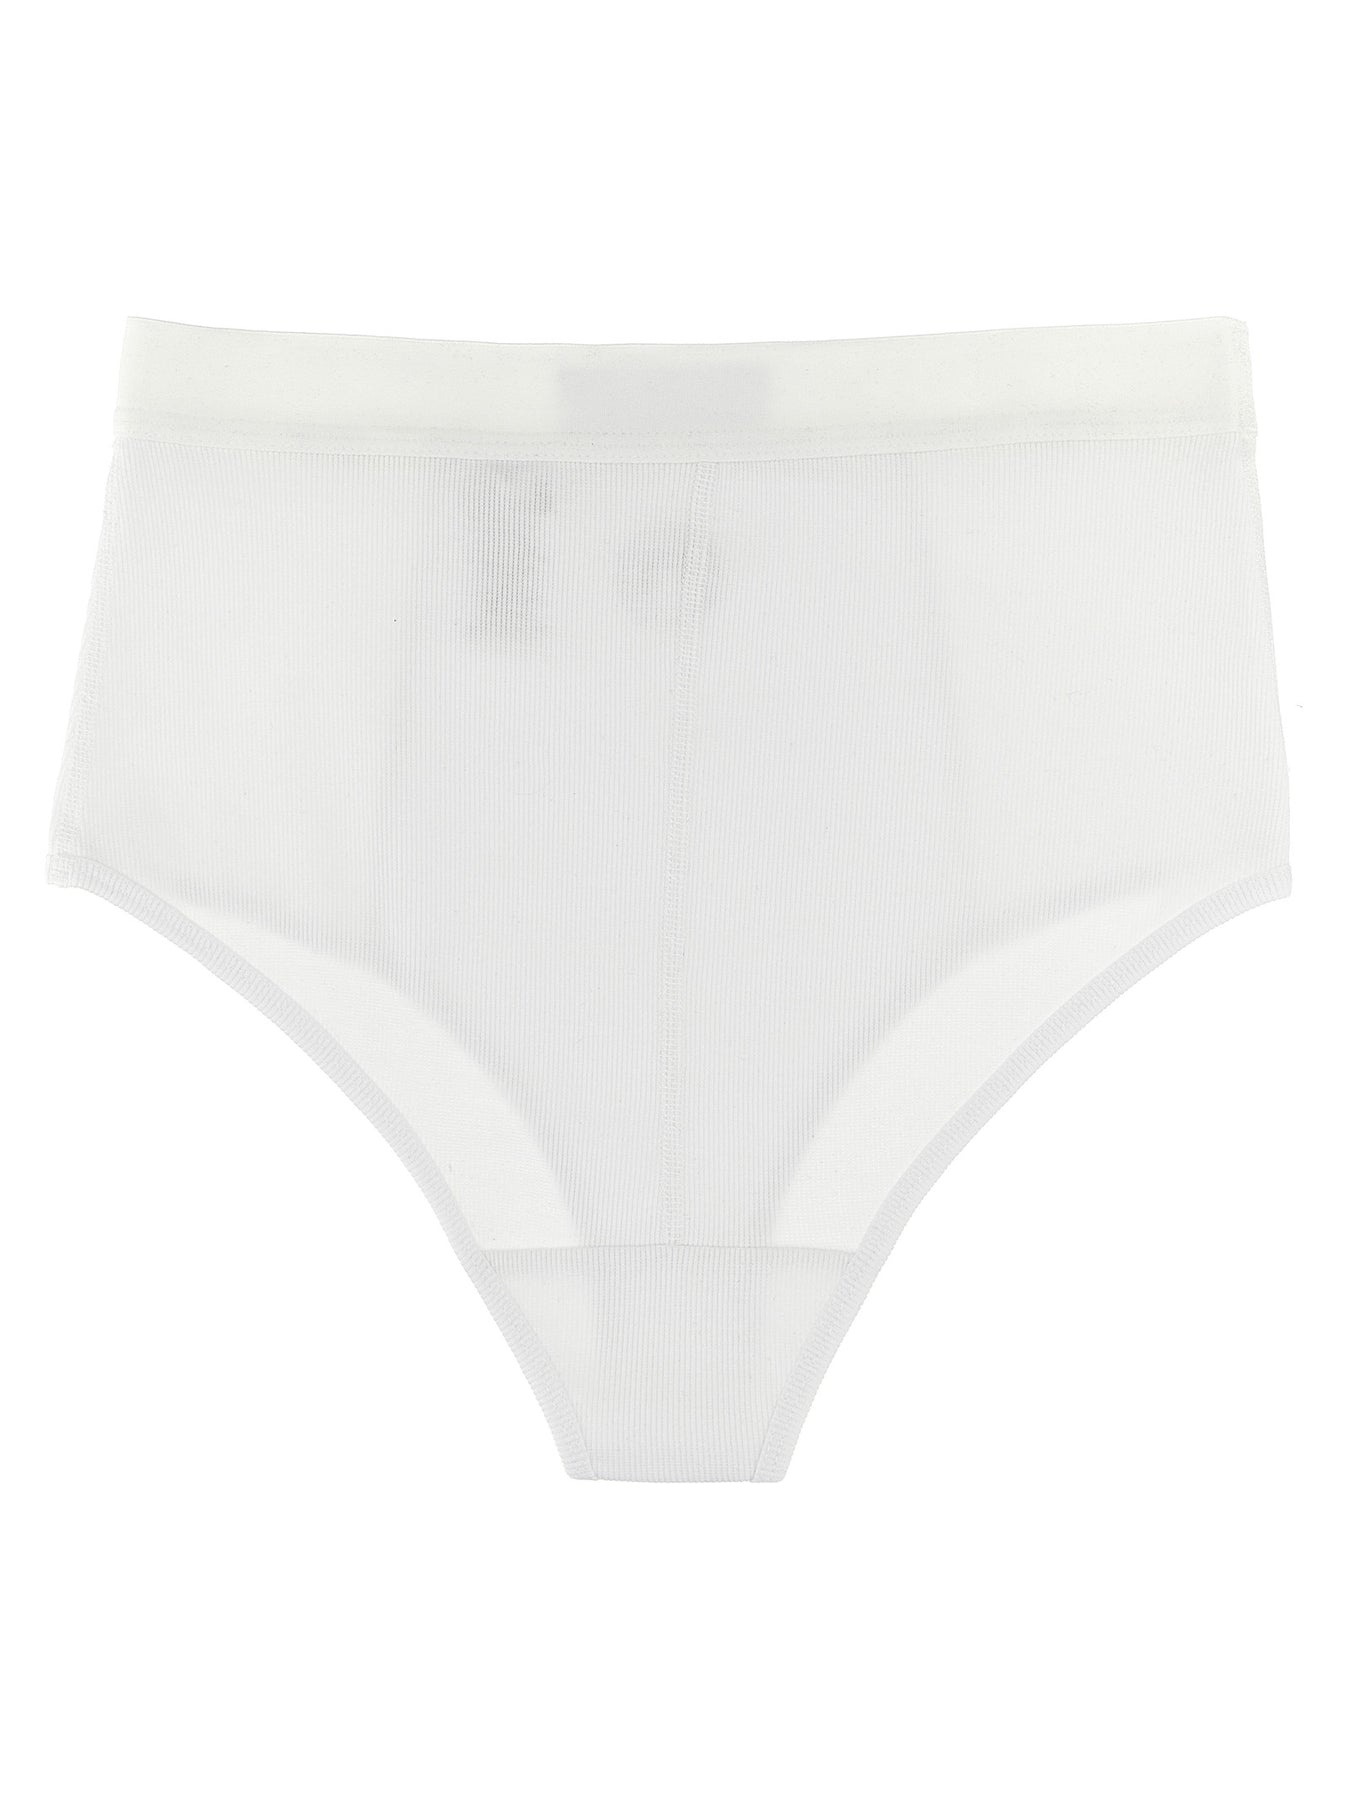 Logo Embroidery Briefs Underwear, Body White - 2